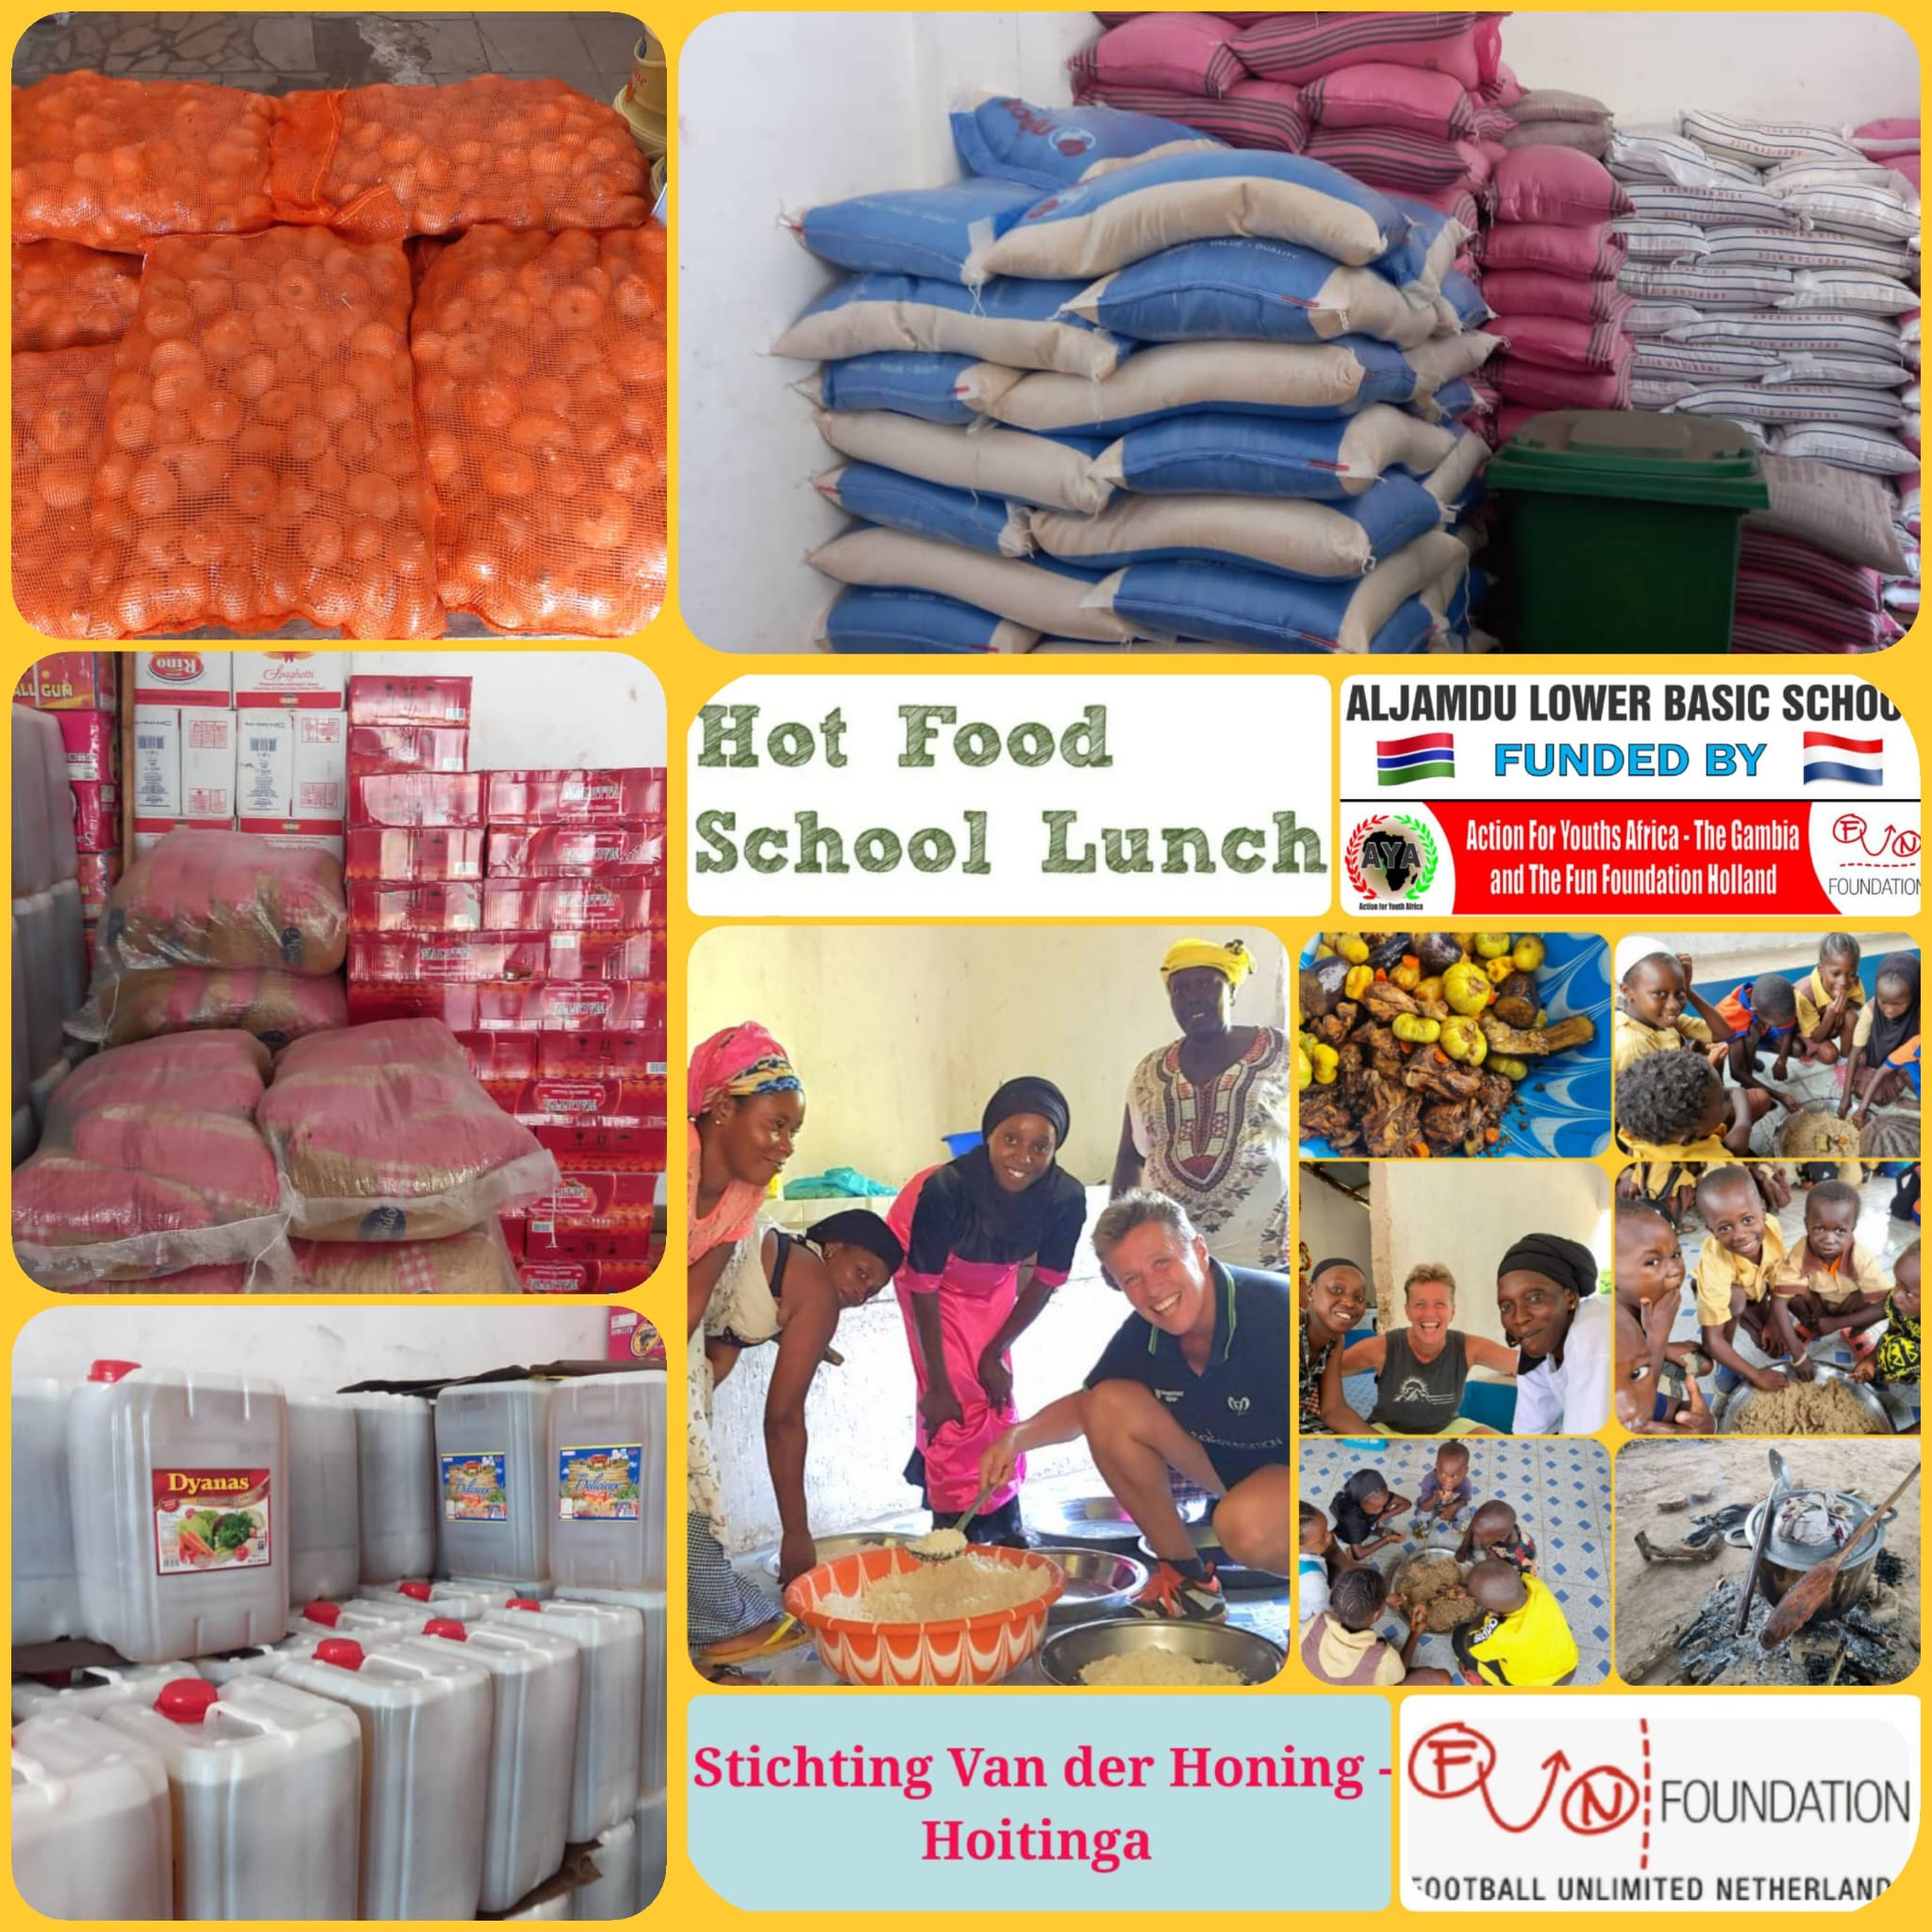 Aljamdou school gets D1M feeding package